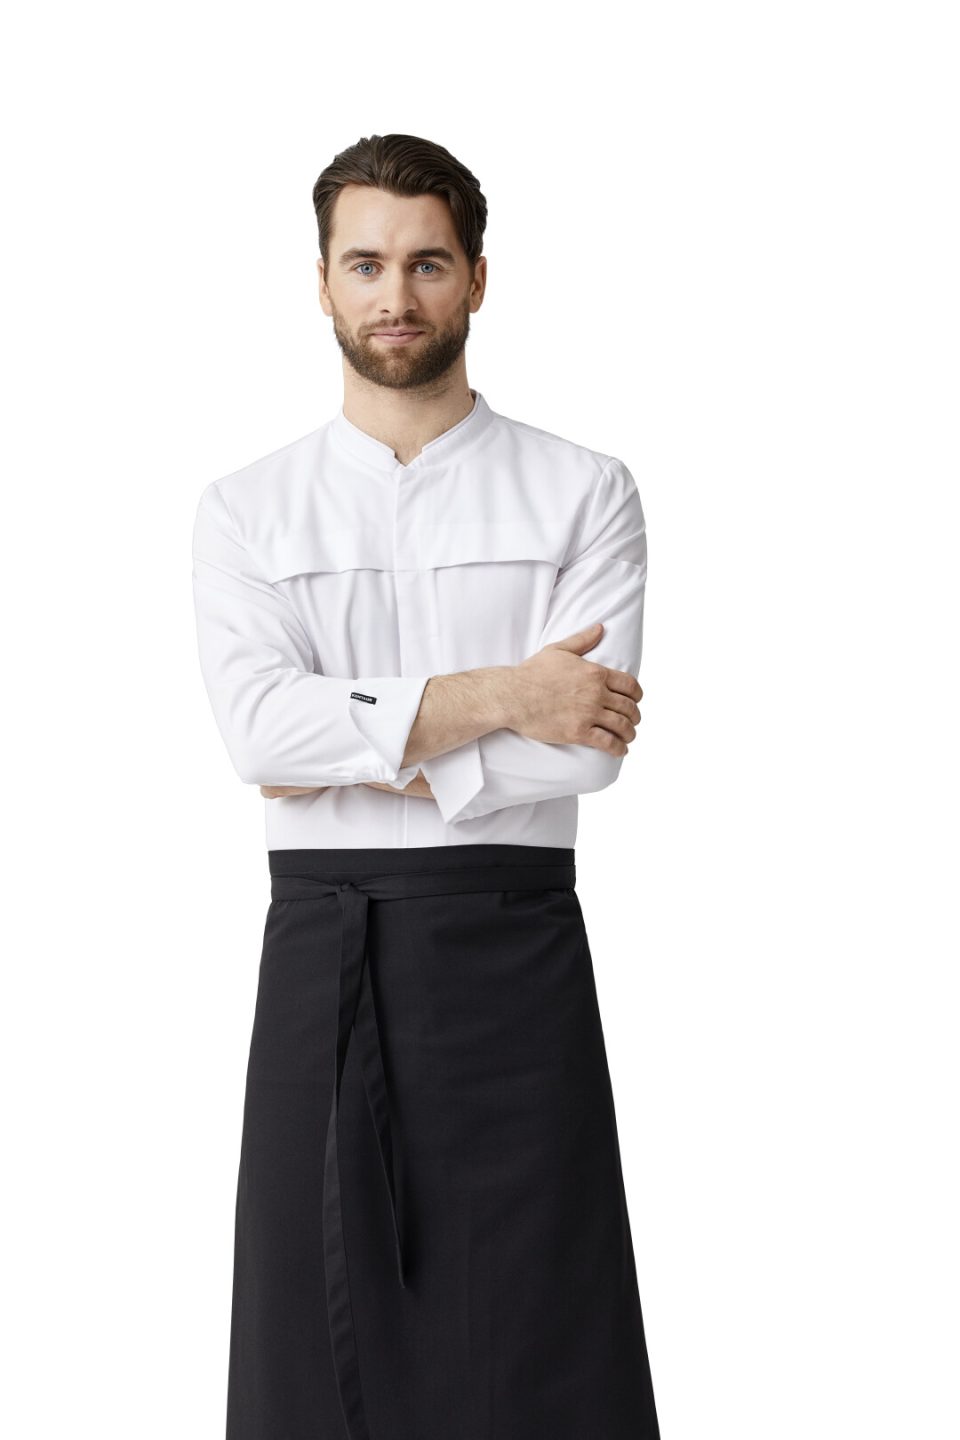 Kuchárske oblečenie KENTAUR - rondón dlhý rukáv, biely